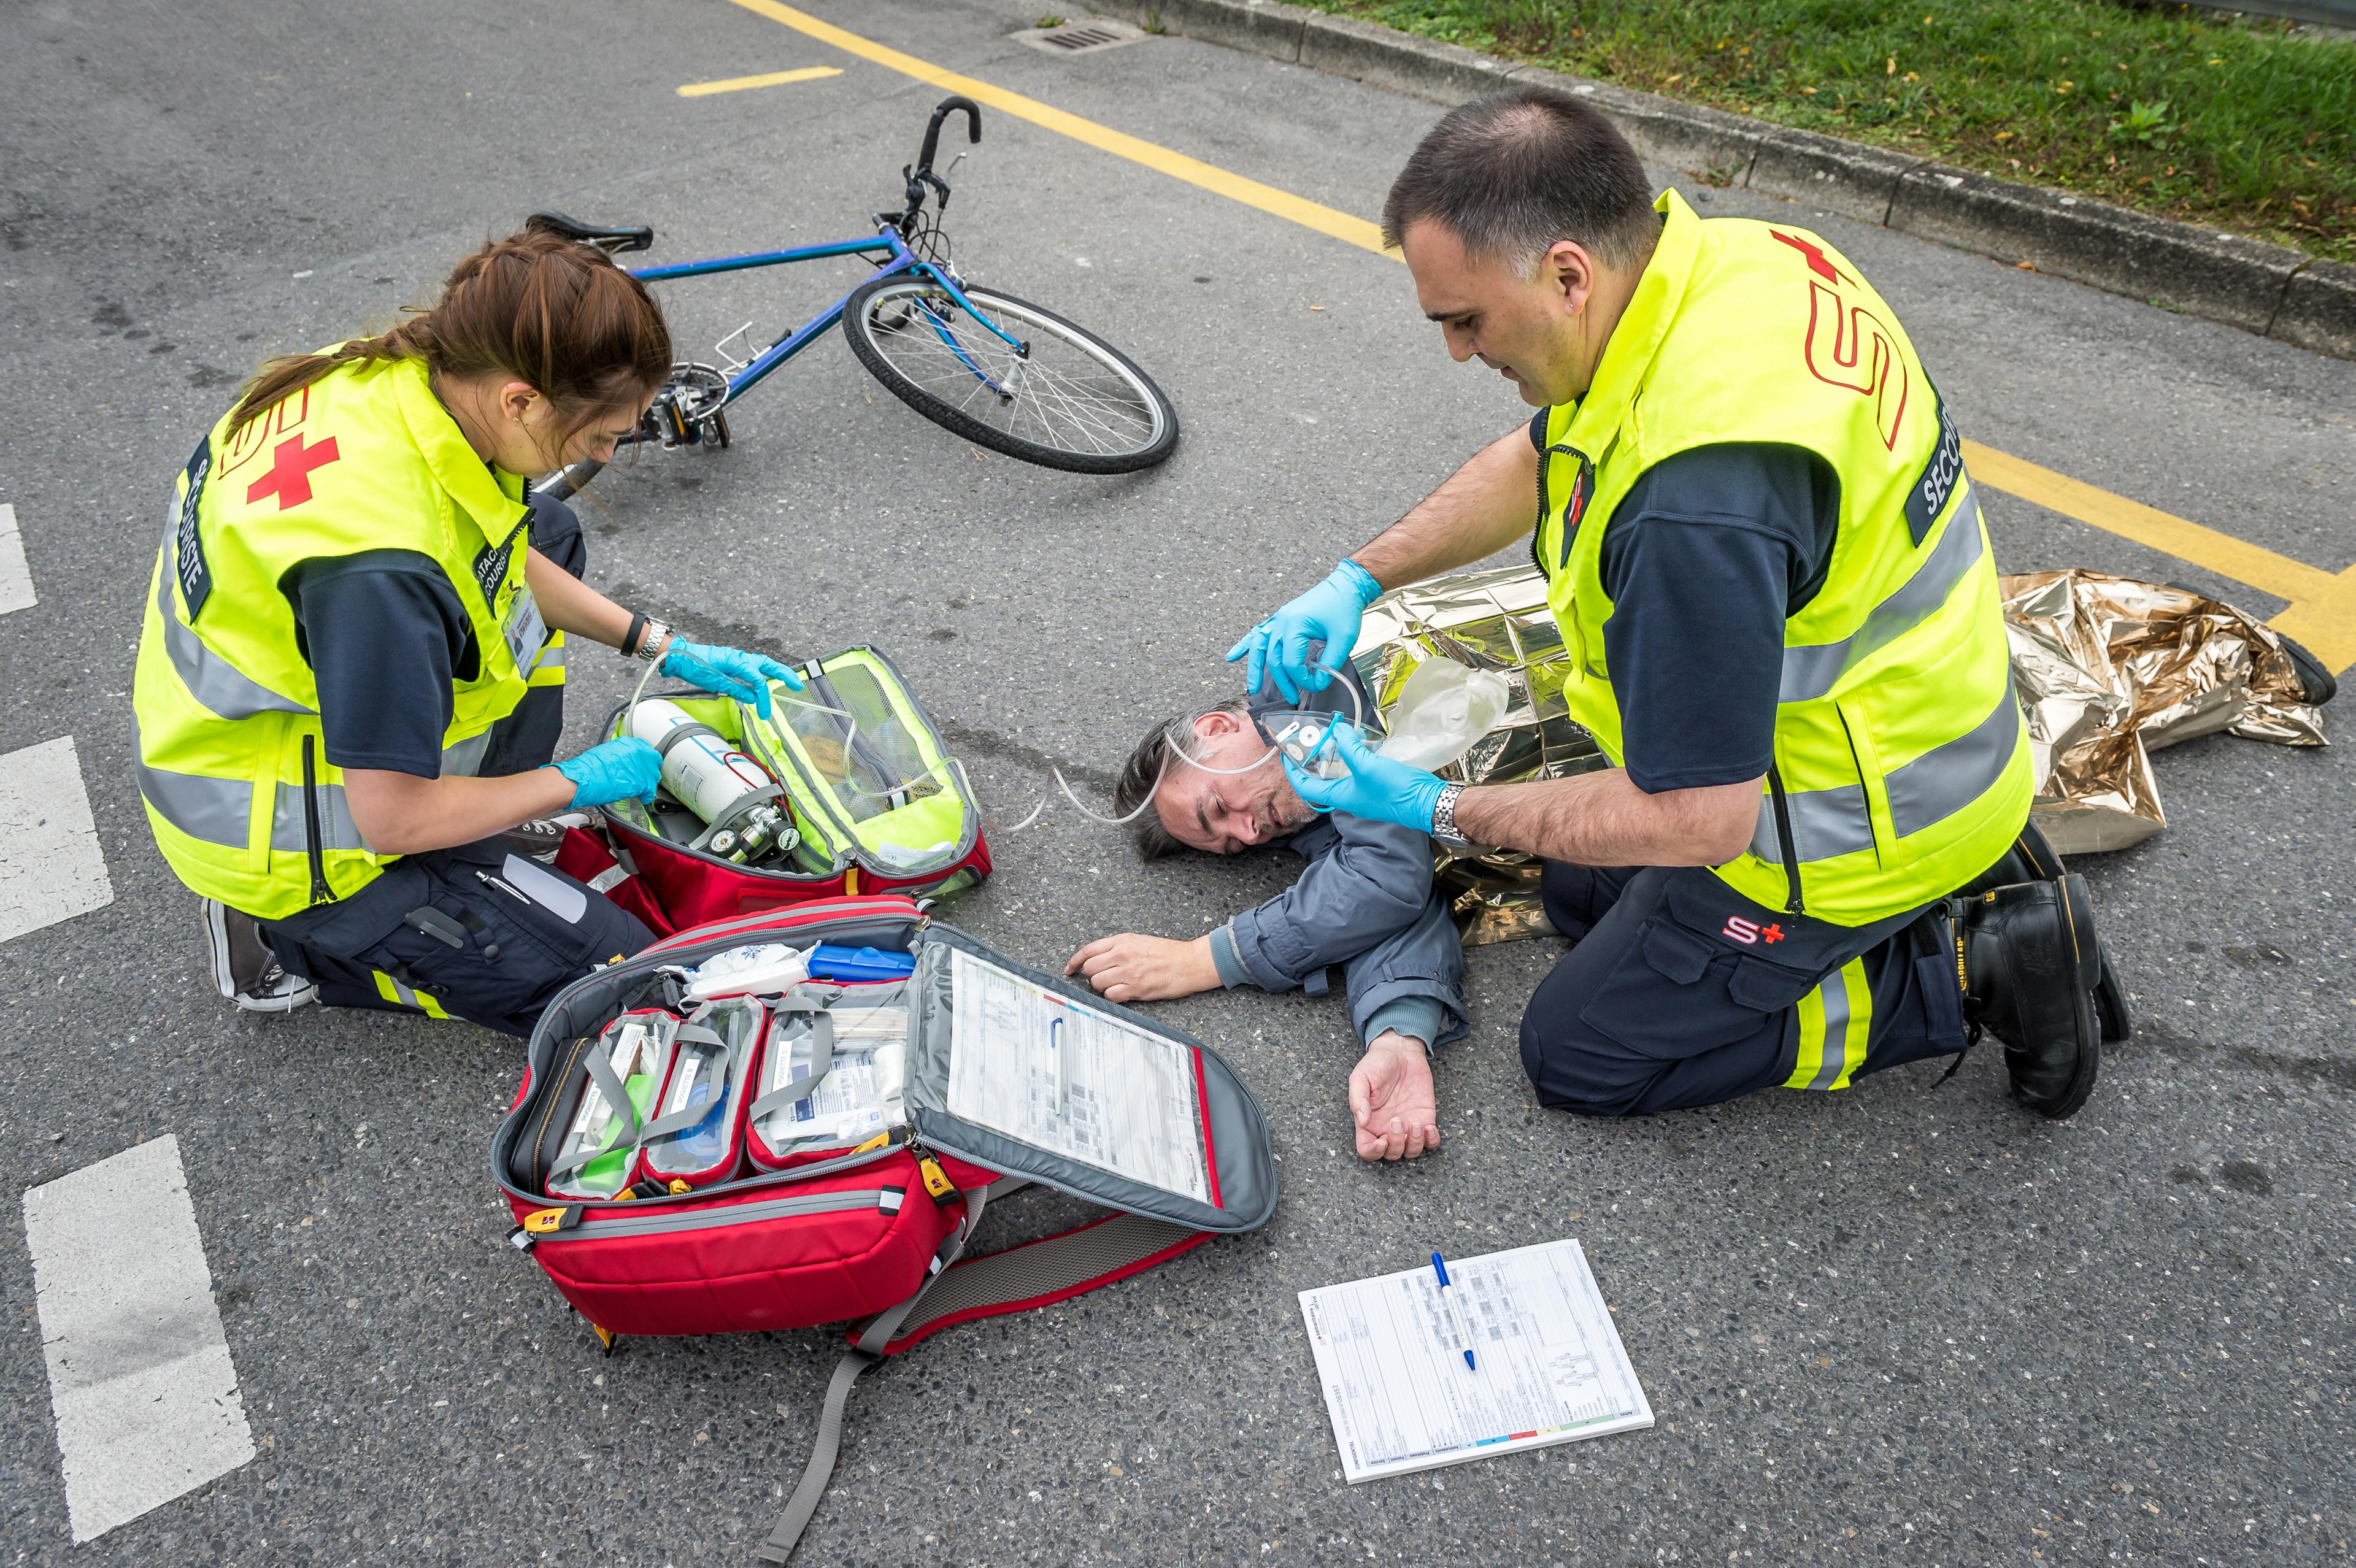 Samariter-Übung: ein verunfallter Fahrradfahrer liegt auf der Strasse neben seinem Fahrrad, zwei Samariter versorgen ihn.